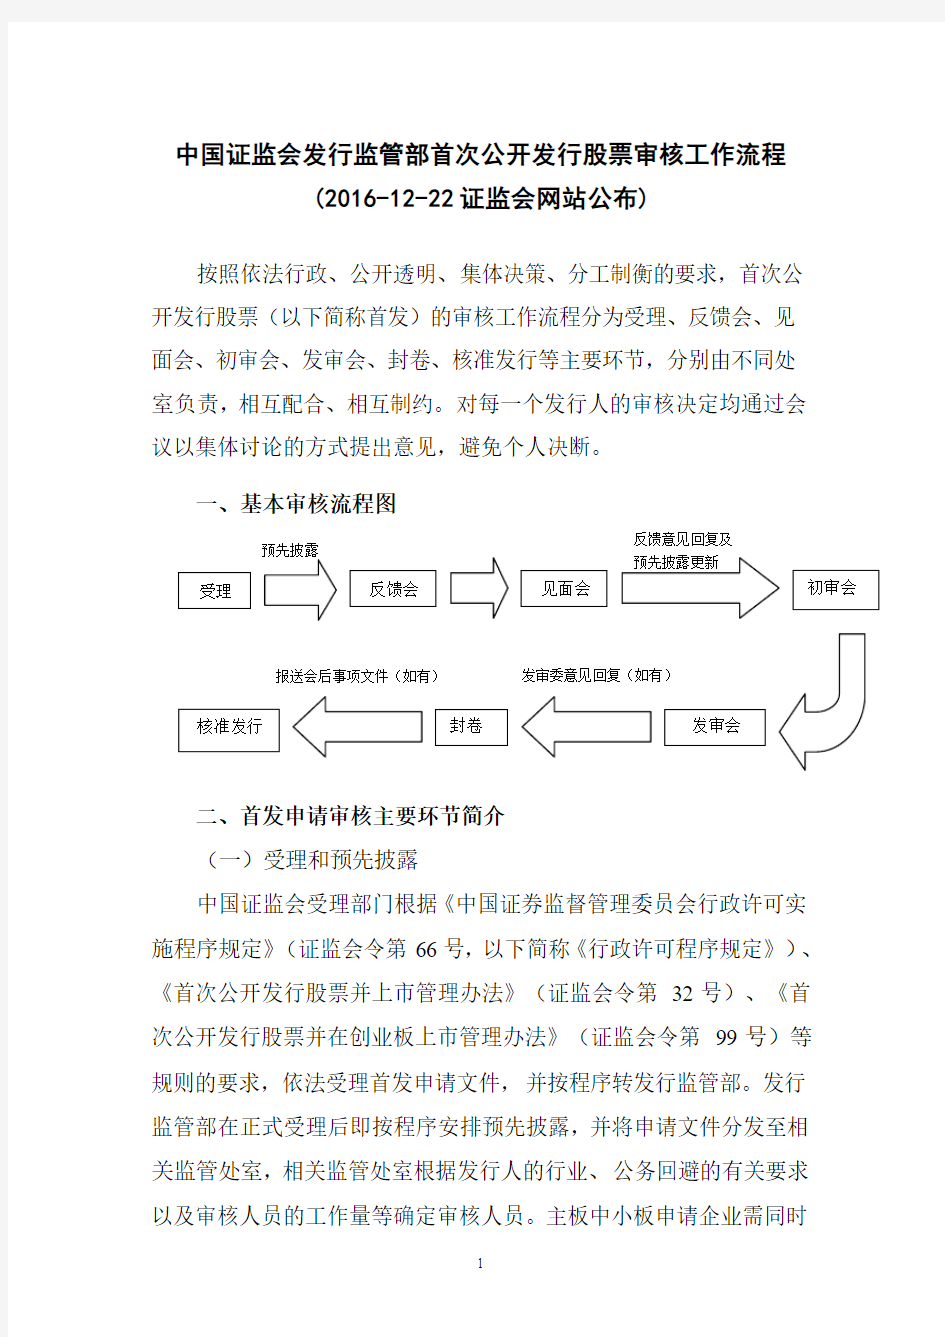 中国证监会发行监管部首次公开发行股票审核工作流程